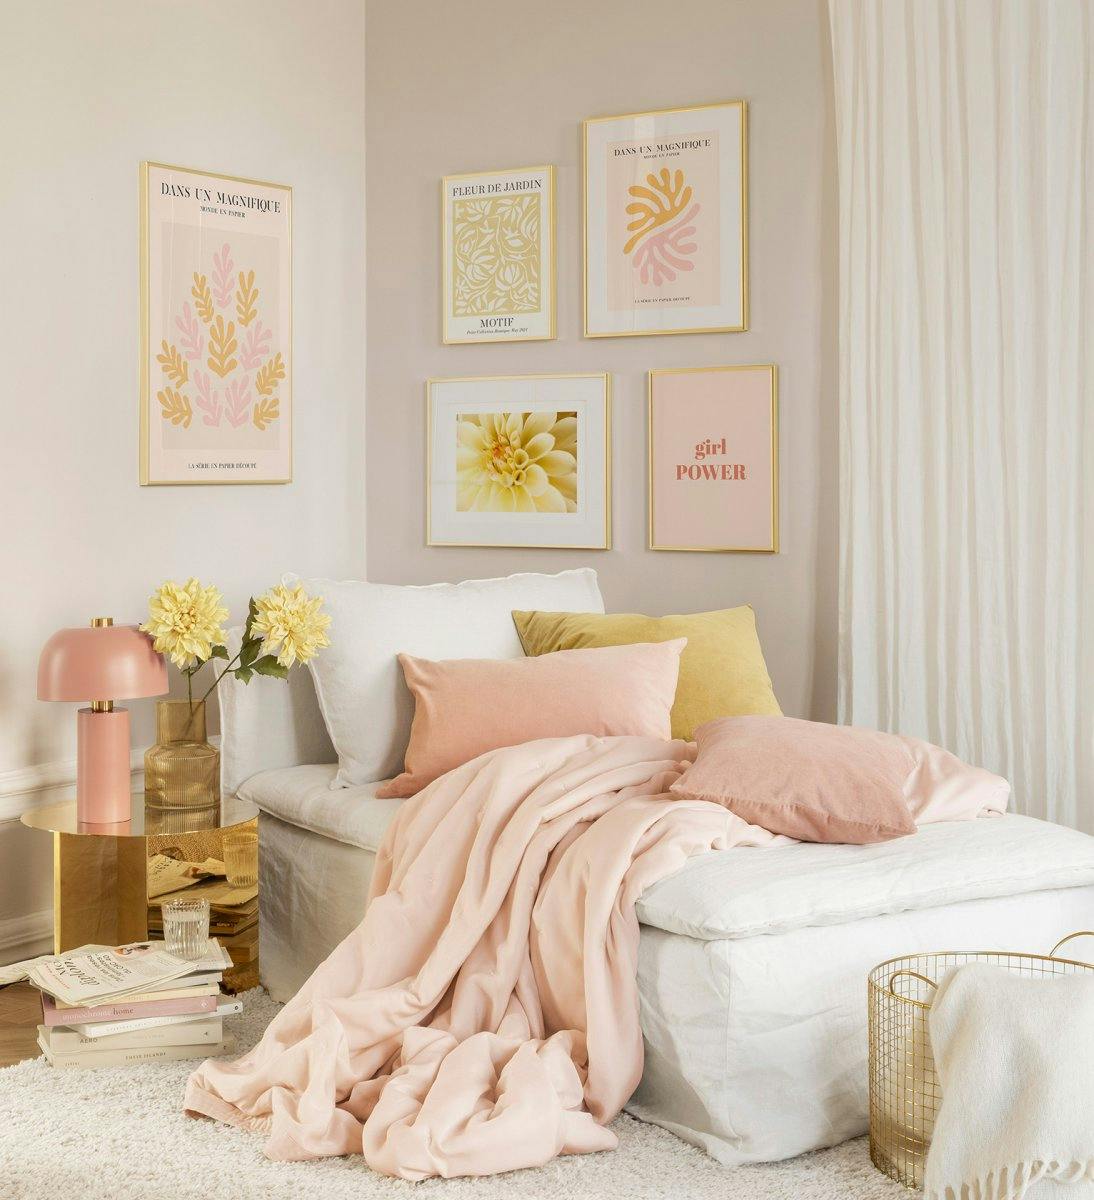 감각적인 골드 프레임과 분홍, 오렌지색 테마가 어우러진 침실을 위한 갤러리월